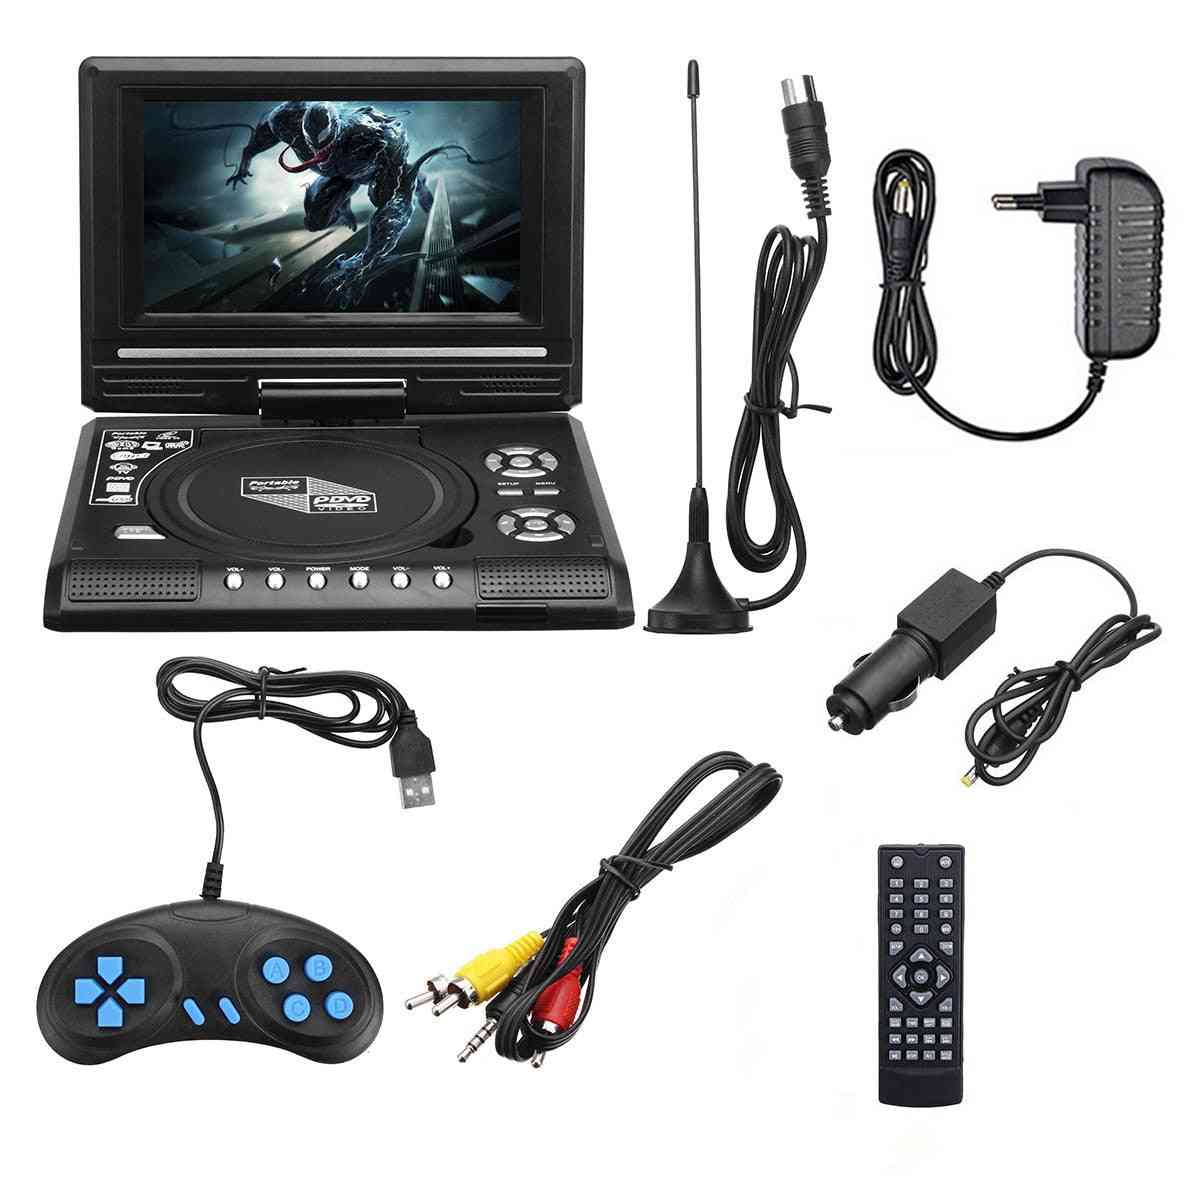 7,8 cala HD TV Samochodowy odtwarzacz DVD - VCD, CD, MP3, odtwarzacz DVD Karty SD USB RCA TV Portatil Cable -